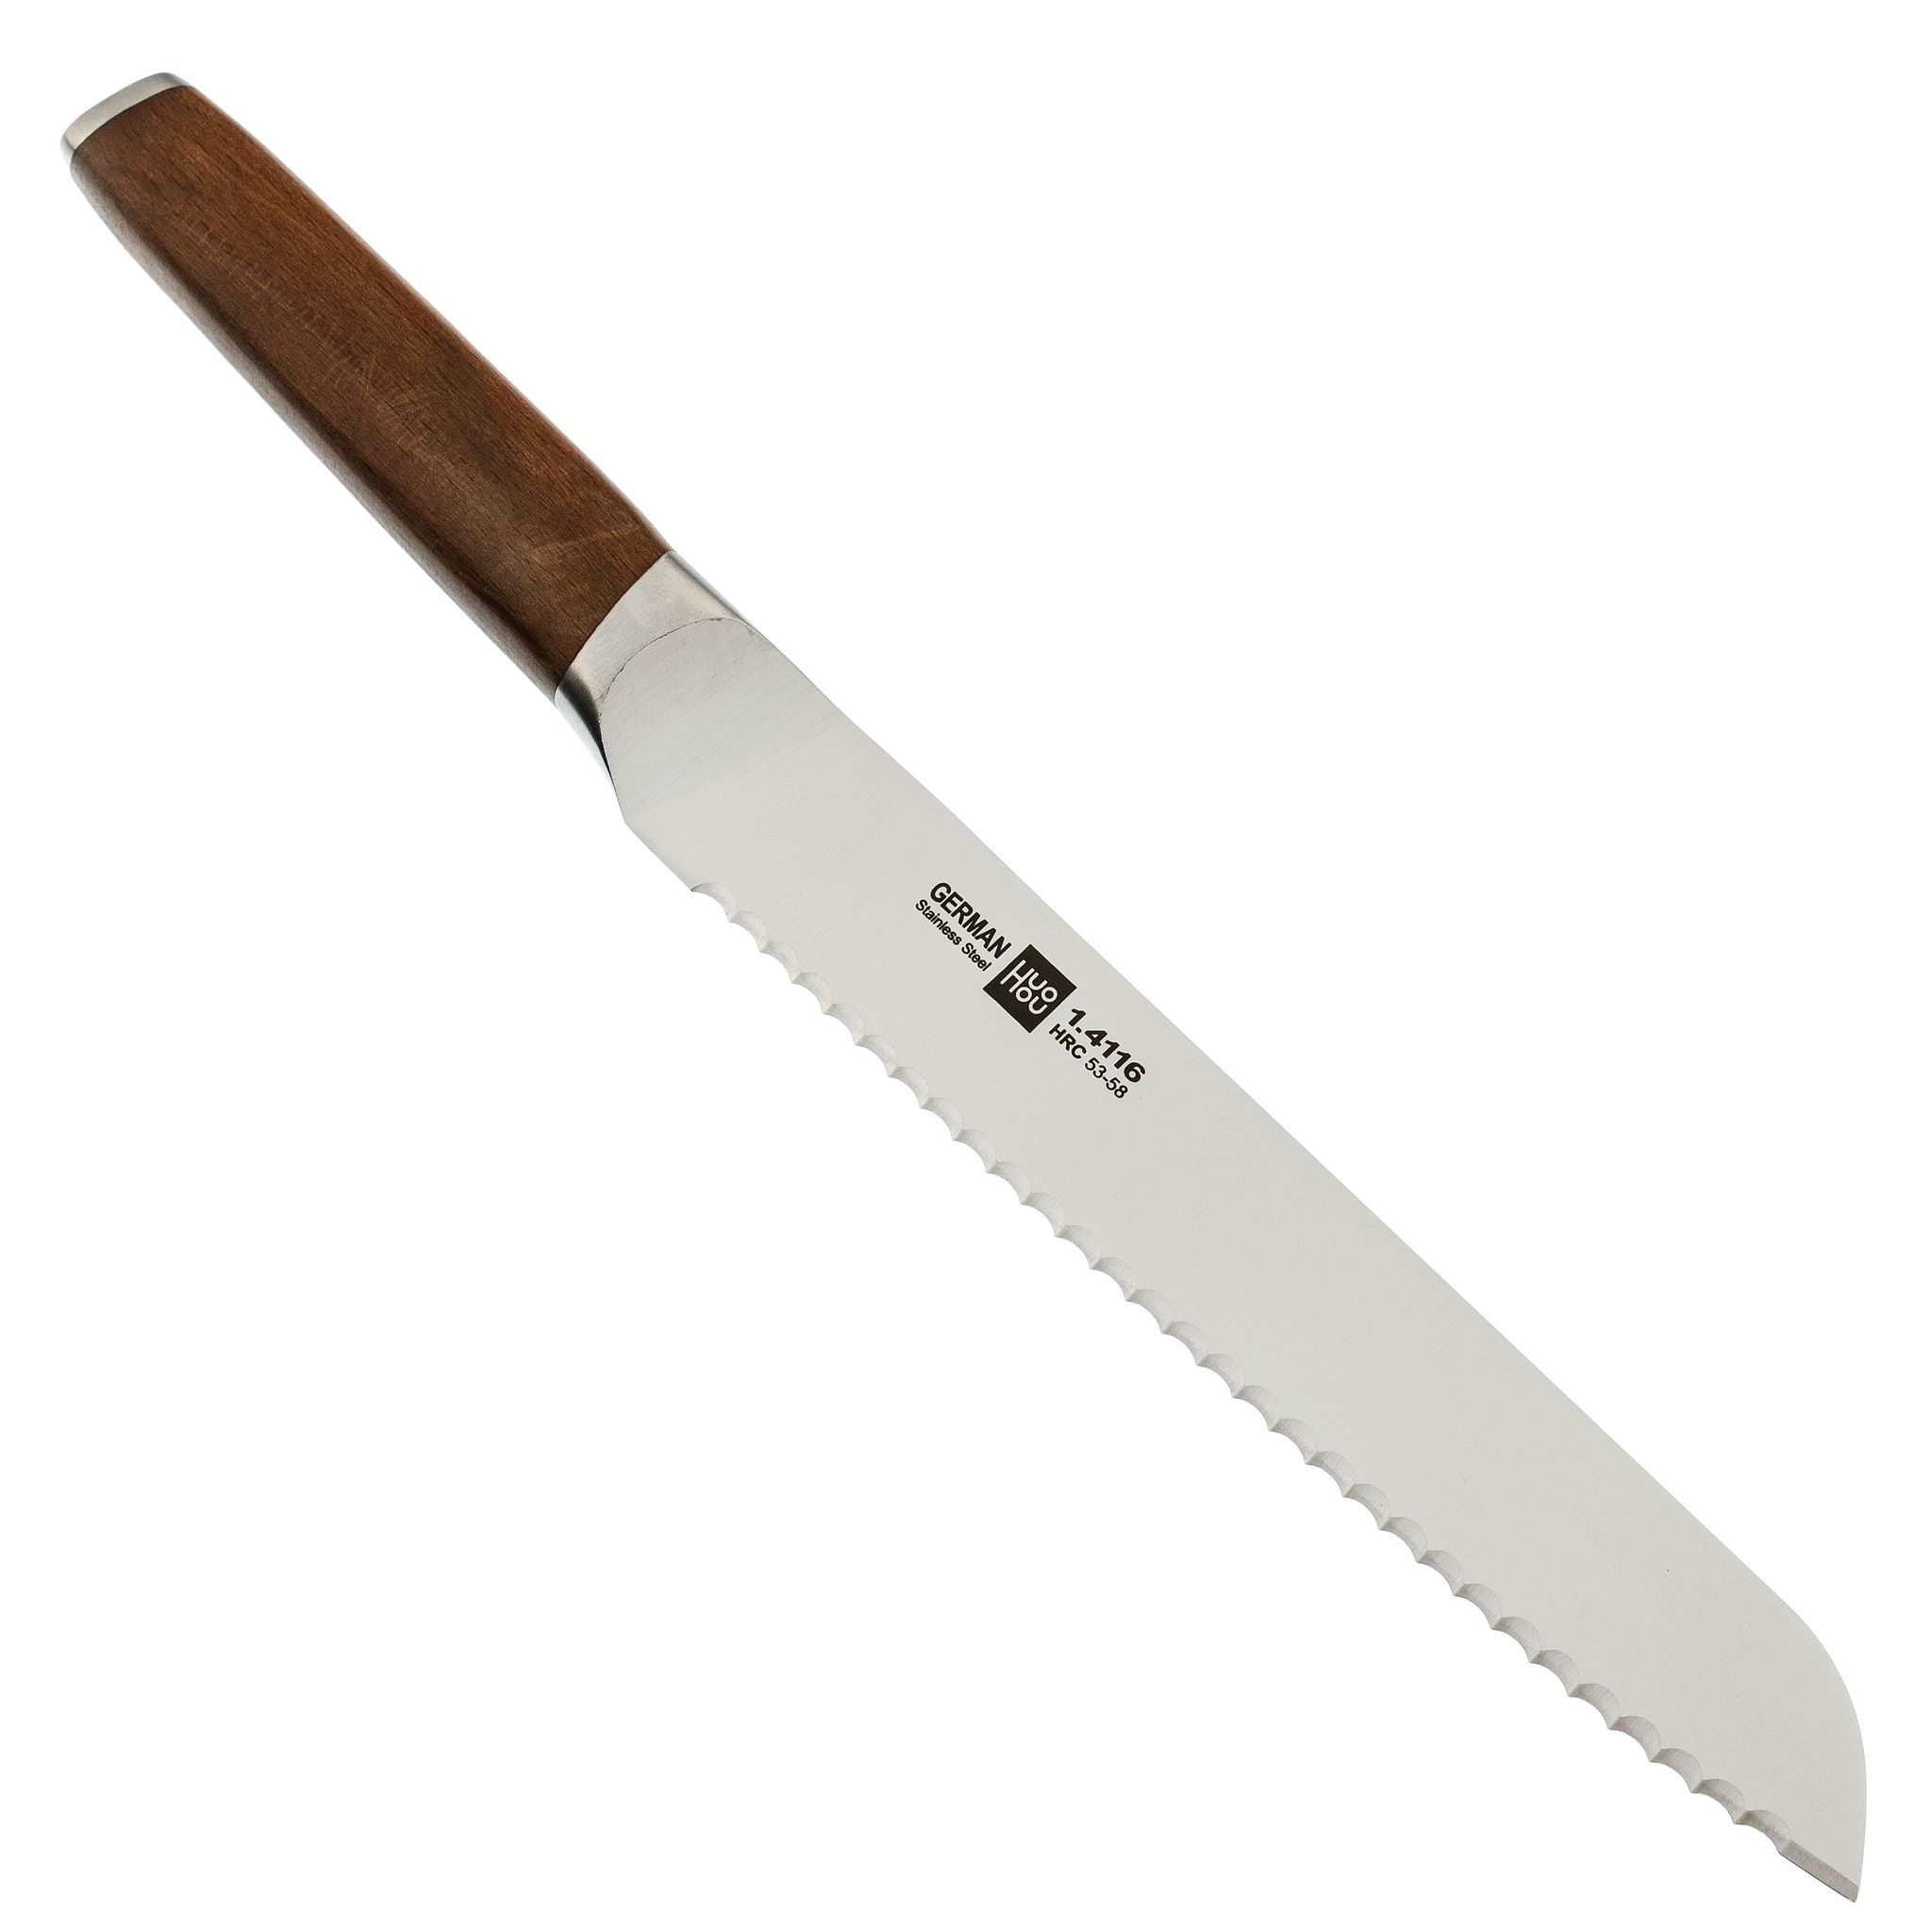 фото Набор кухонных ножей на подставке xiaomi huohou molybdenum vanadium steel kitchen knife set